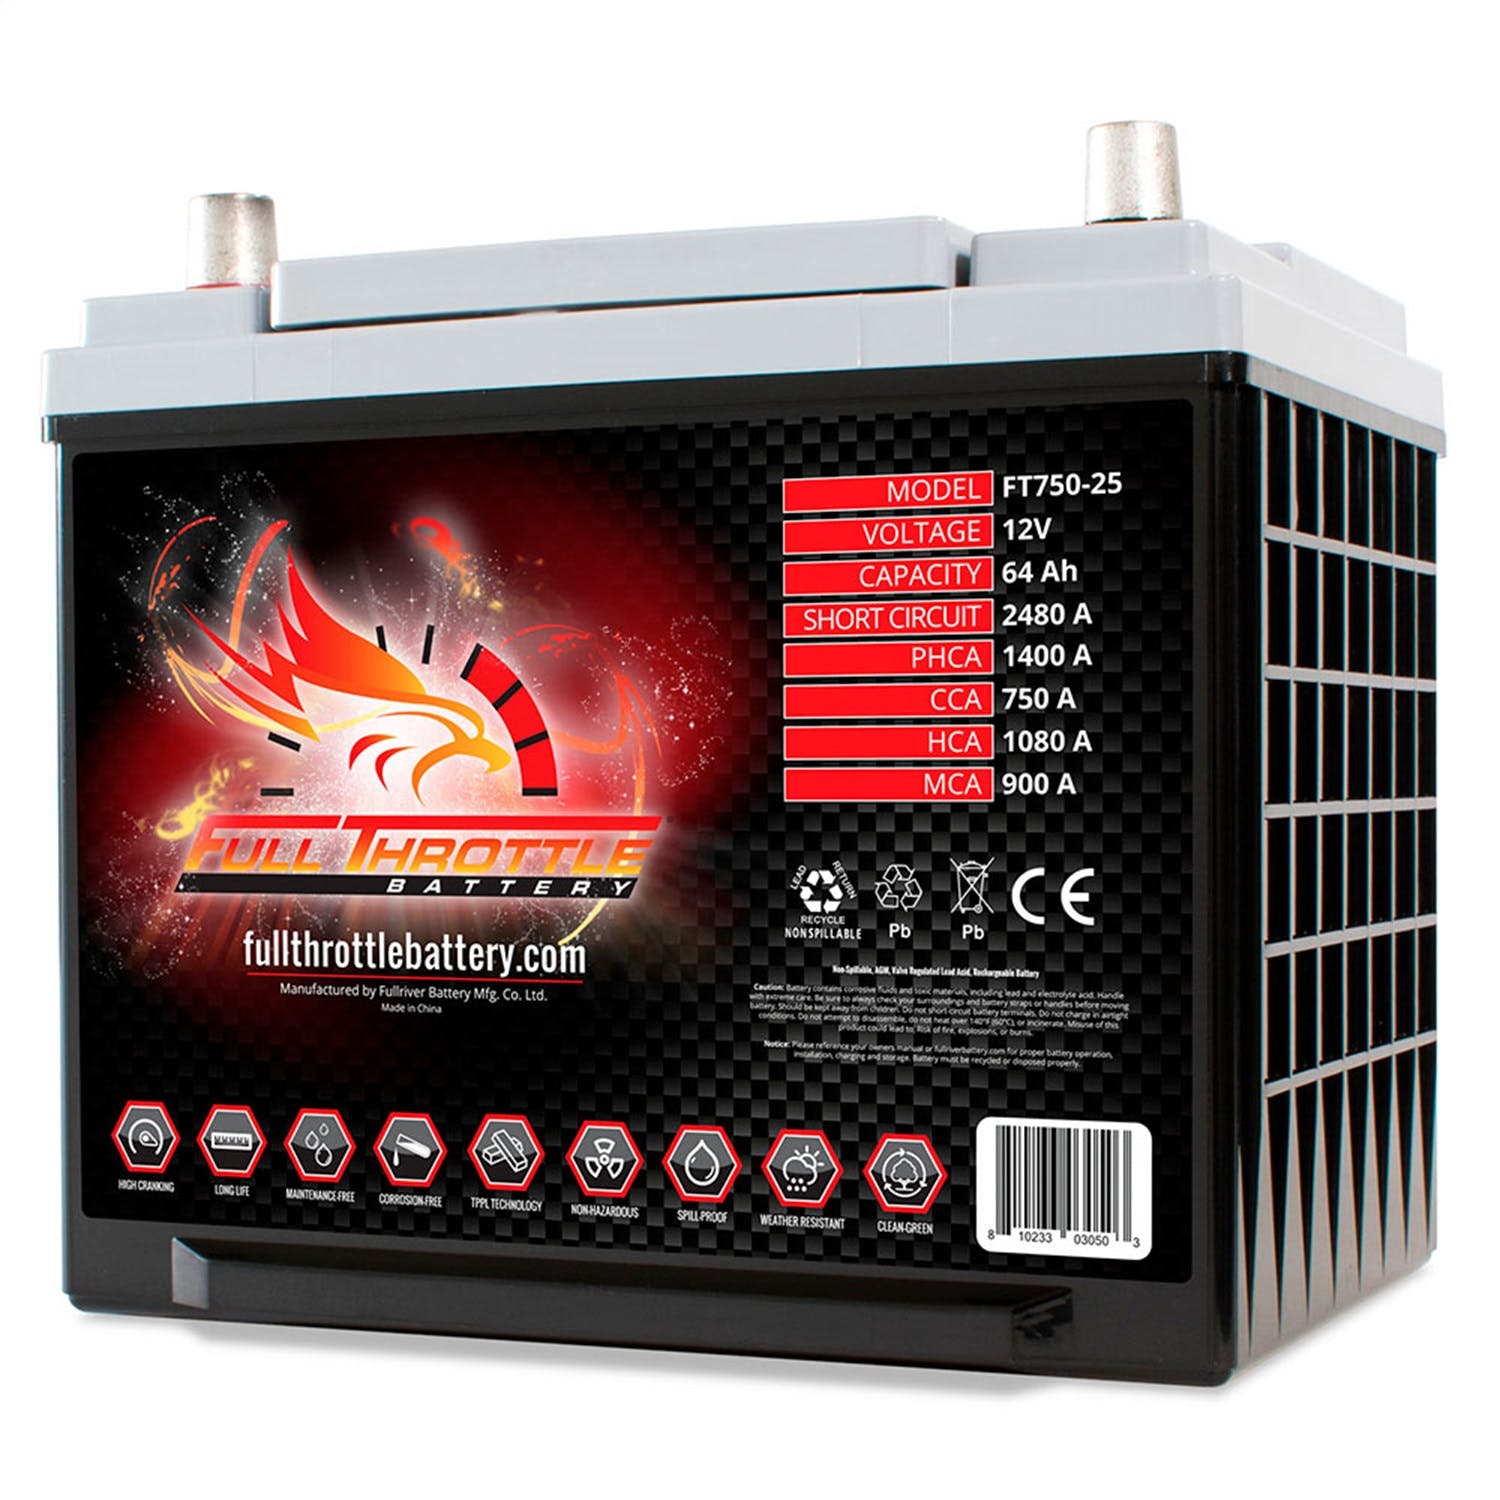 Fullriver Battery FT750-25 Full Throttle 12V Automotive Battery